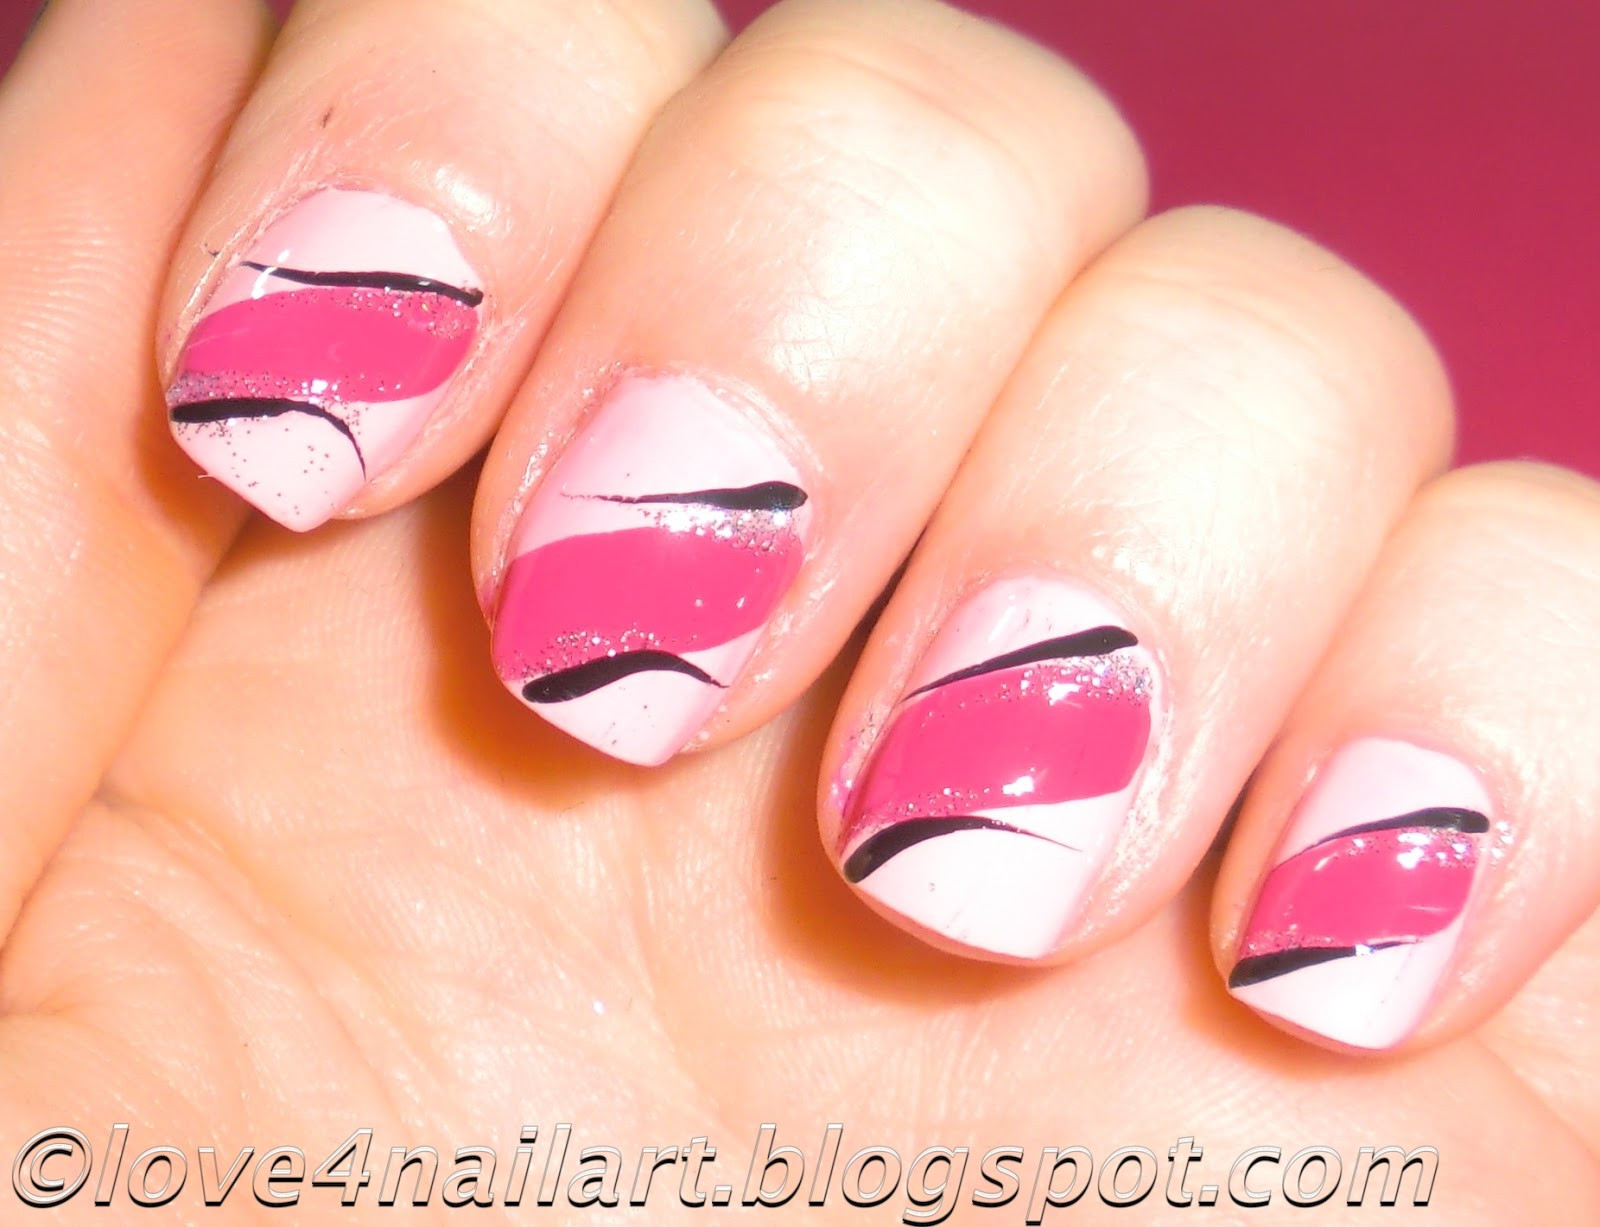 Pink Nail Designs For Short Nails
 Love4NailArt EASY Pink Nail Art Design 4 Short Nails